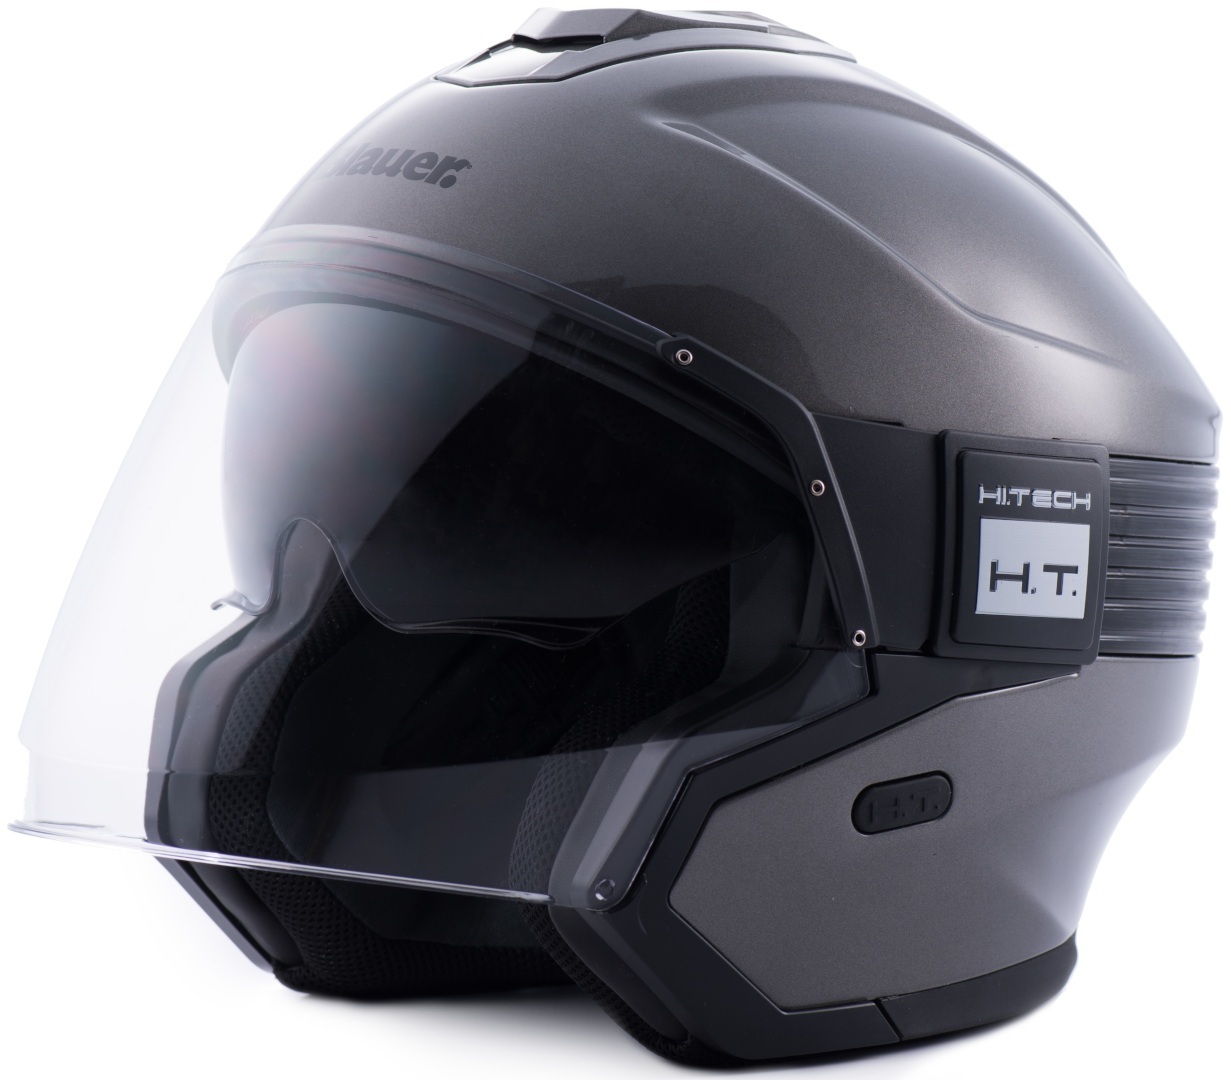 Реактивный шлем Blauer Hacker со съемной подкладкой, серый/черный шлем momo minimomo реактивный черный желтый серый